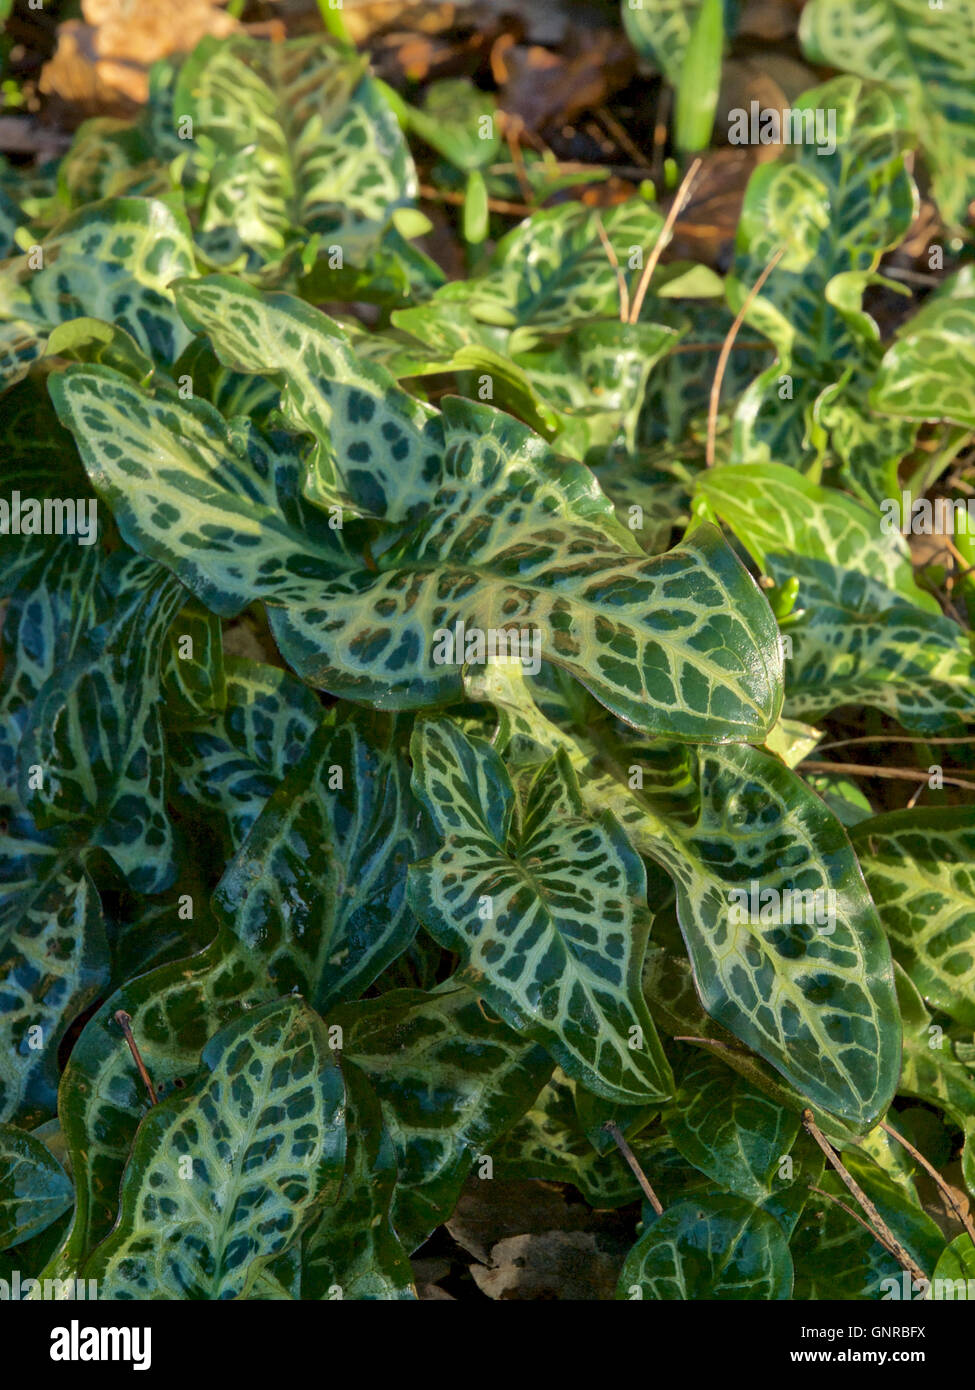 Early Spring leaves of Arum italicum subs. italicum Marmoratum Stock Photo